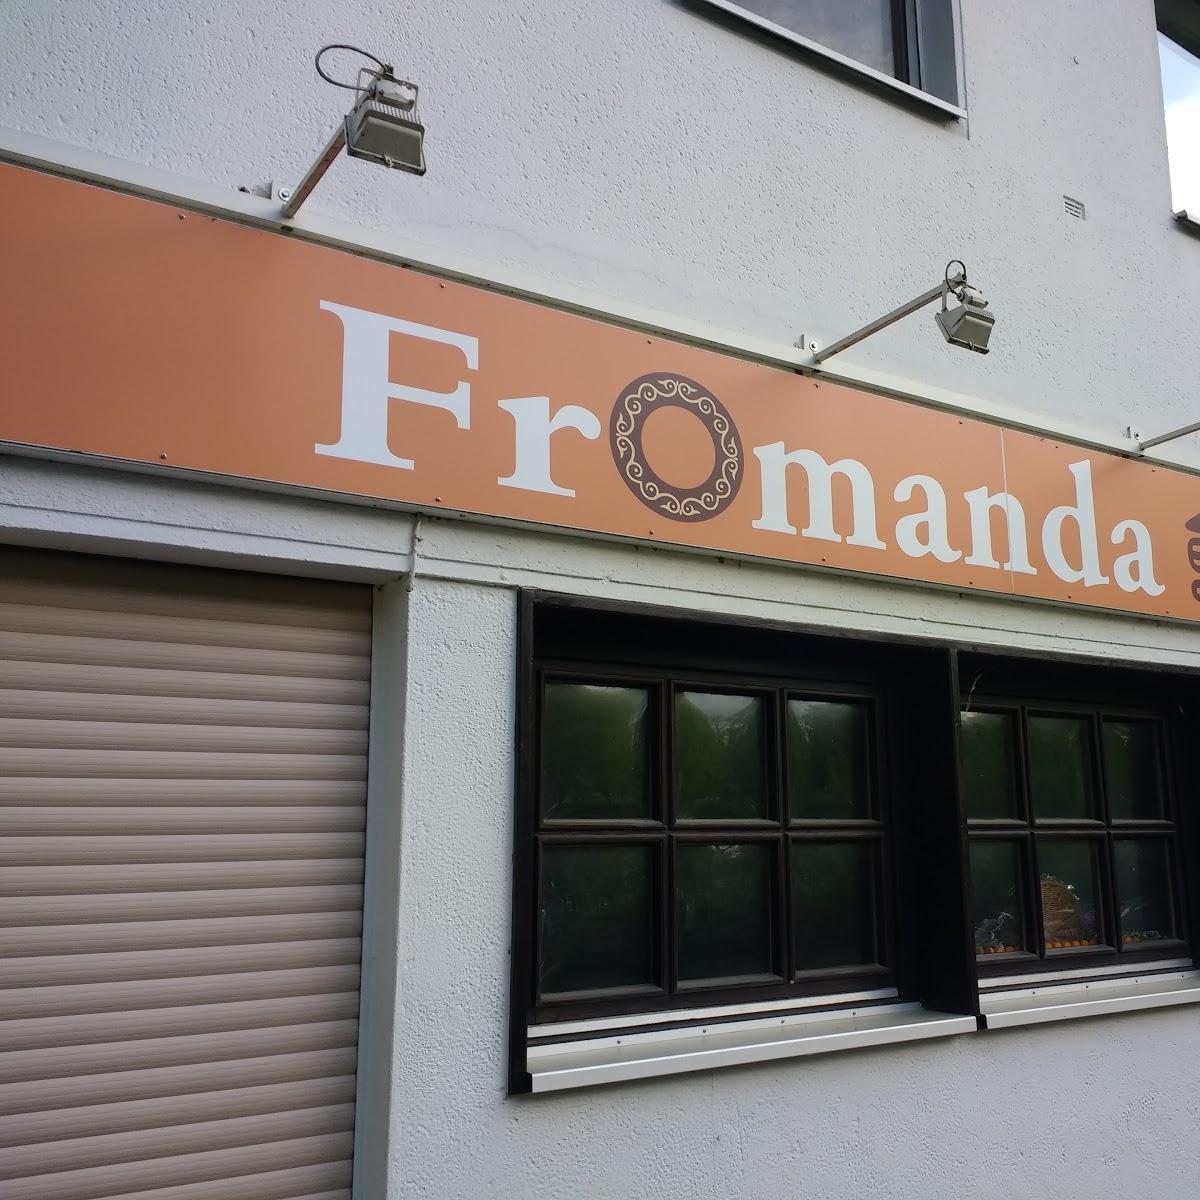 Restaurant "Fromanda China Restaurant" in Köln